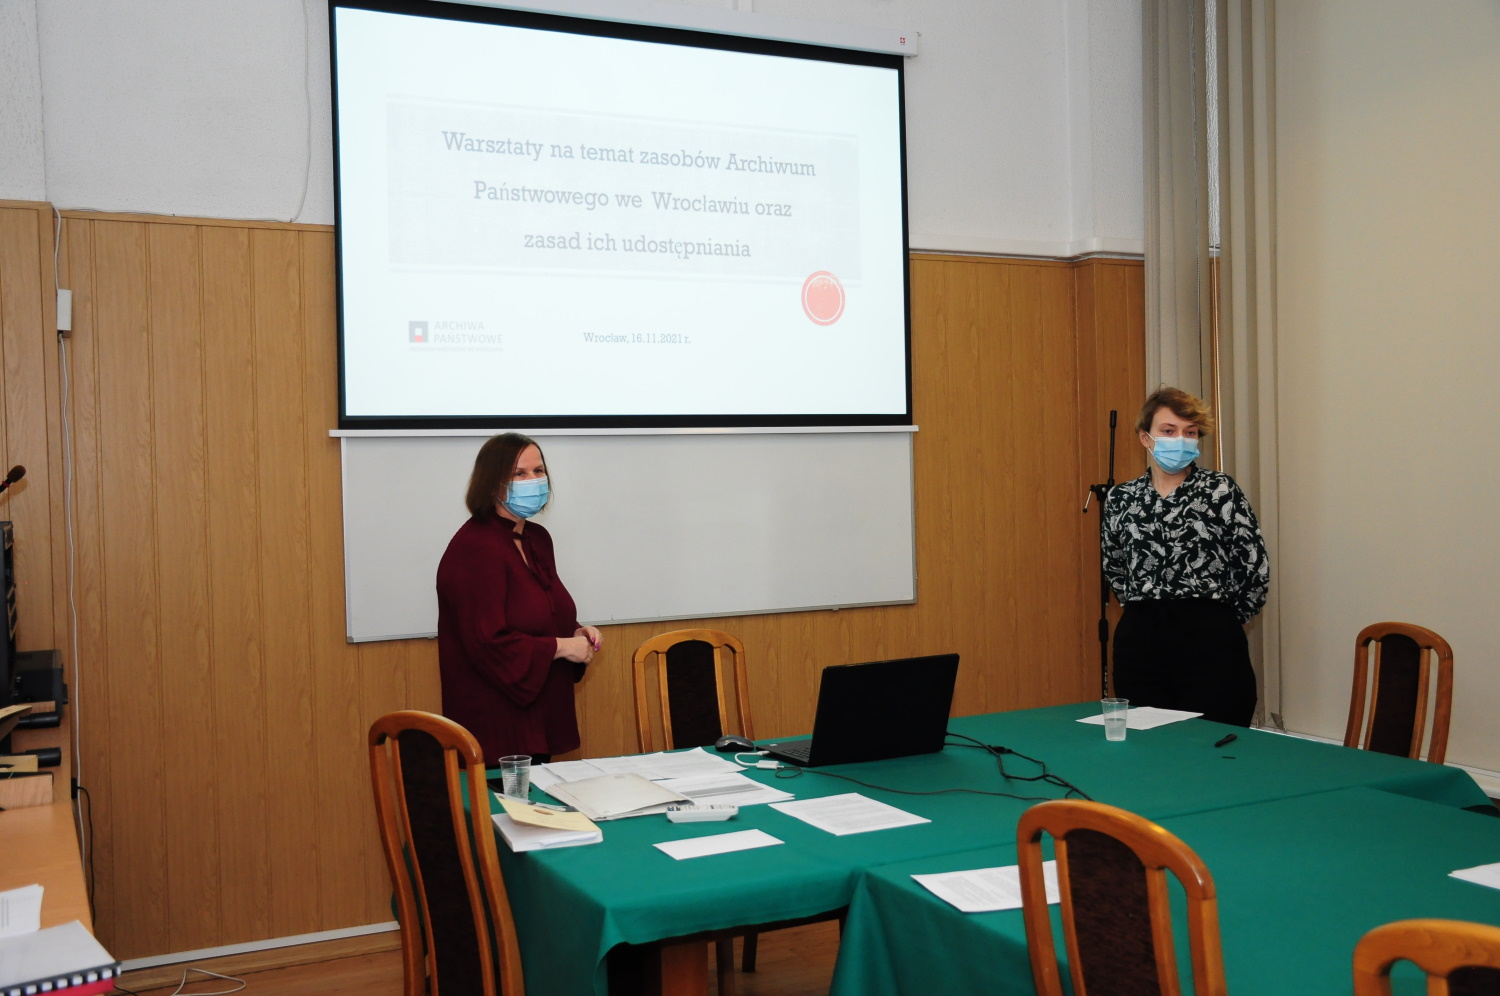 Danuta Płókarz i Karolina Rybicka stoją za stołem. Za nimi wyświetlana prezentacja pod tytułem „Warsztaty na temat zasobów Archiwum Państwowego we Wrocławiu oraz zasad ich udostępniania”.